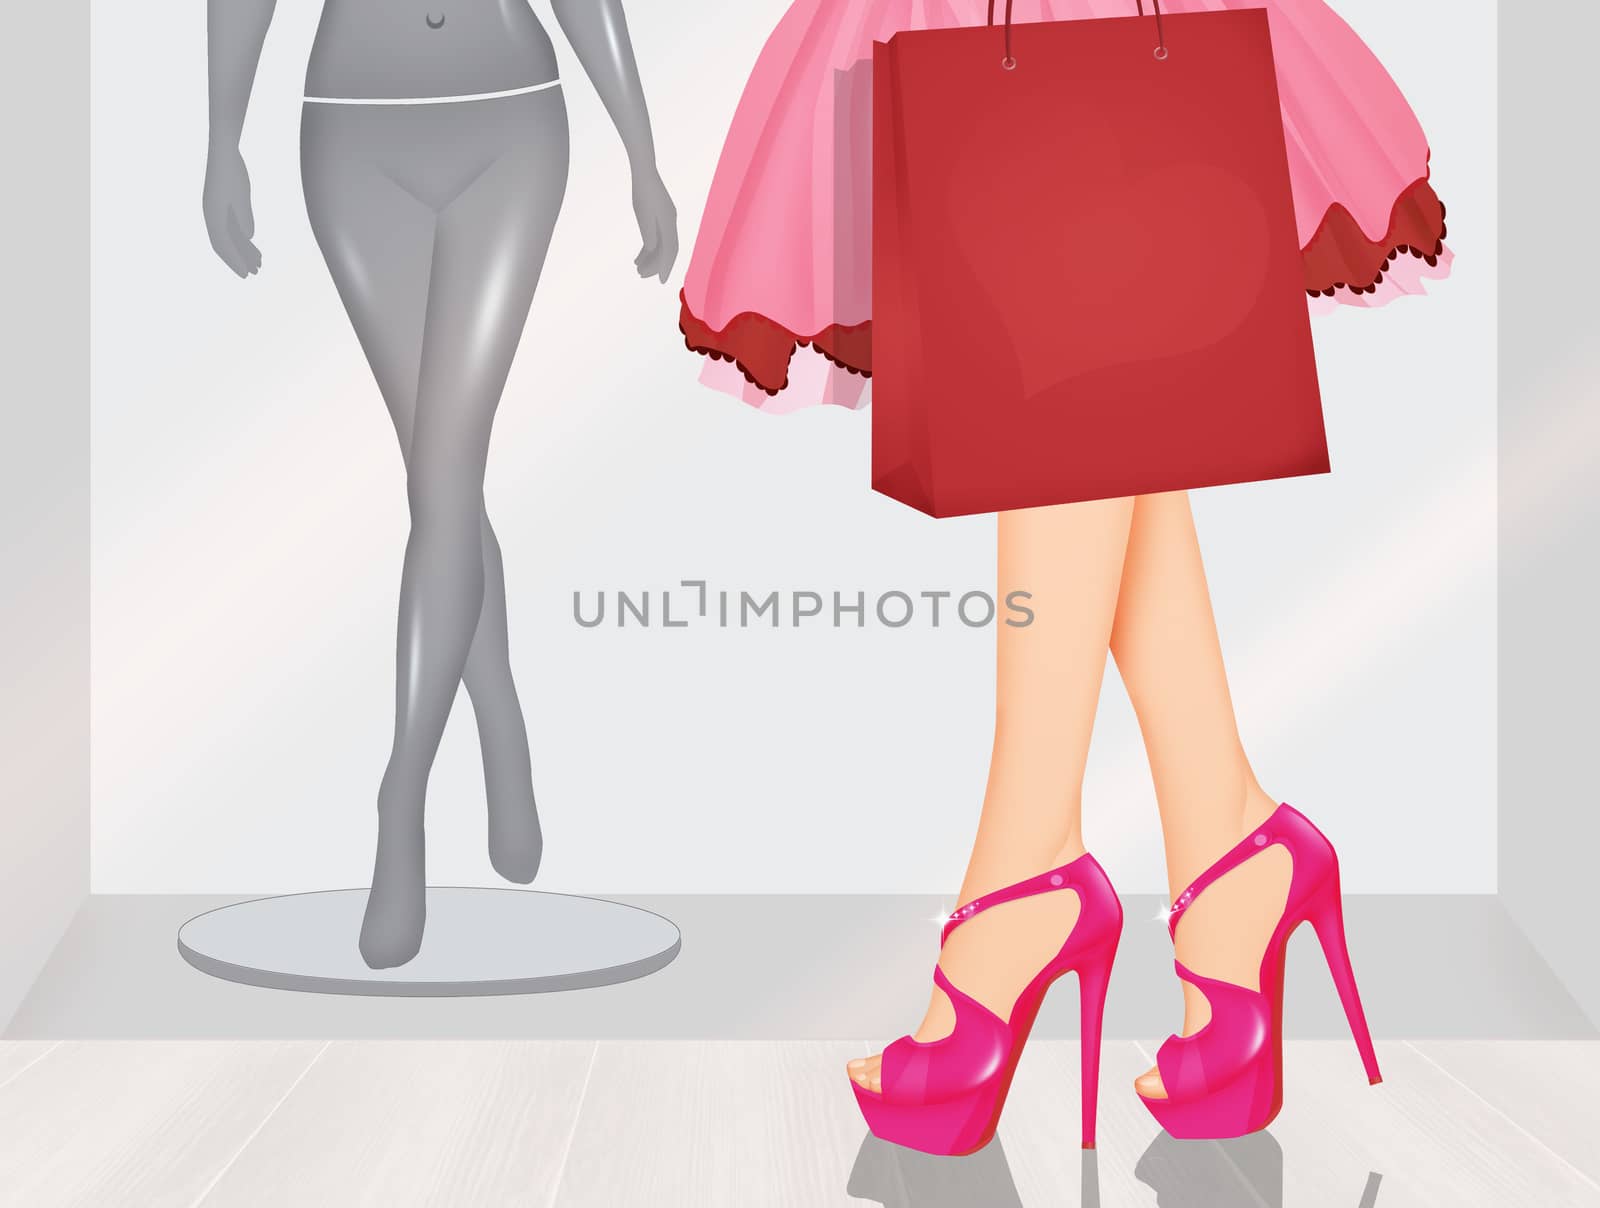 illustration of women love shopping